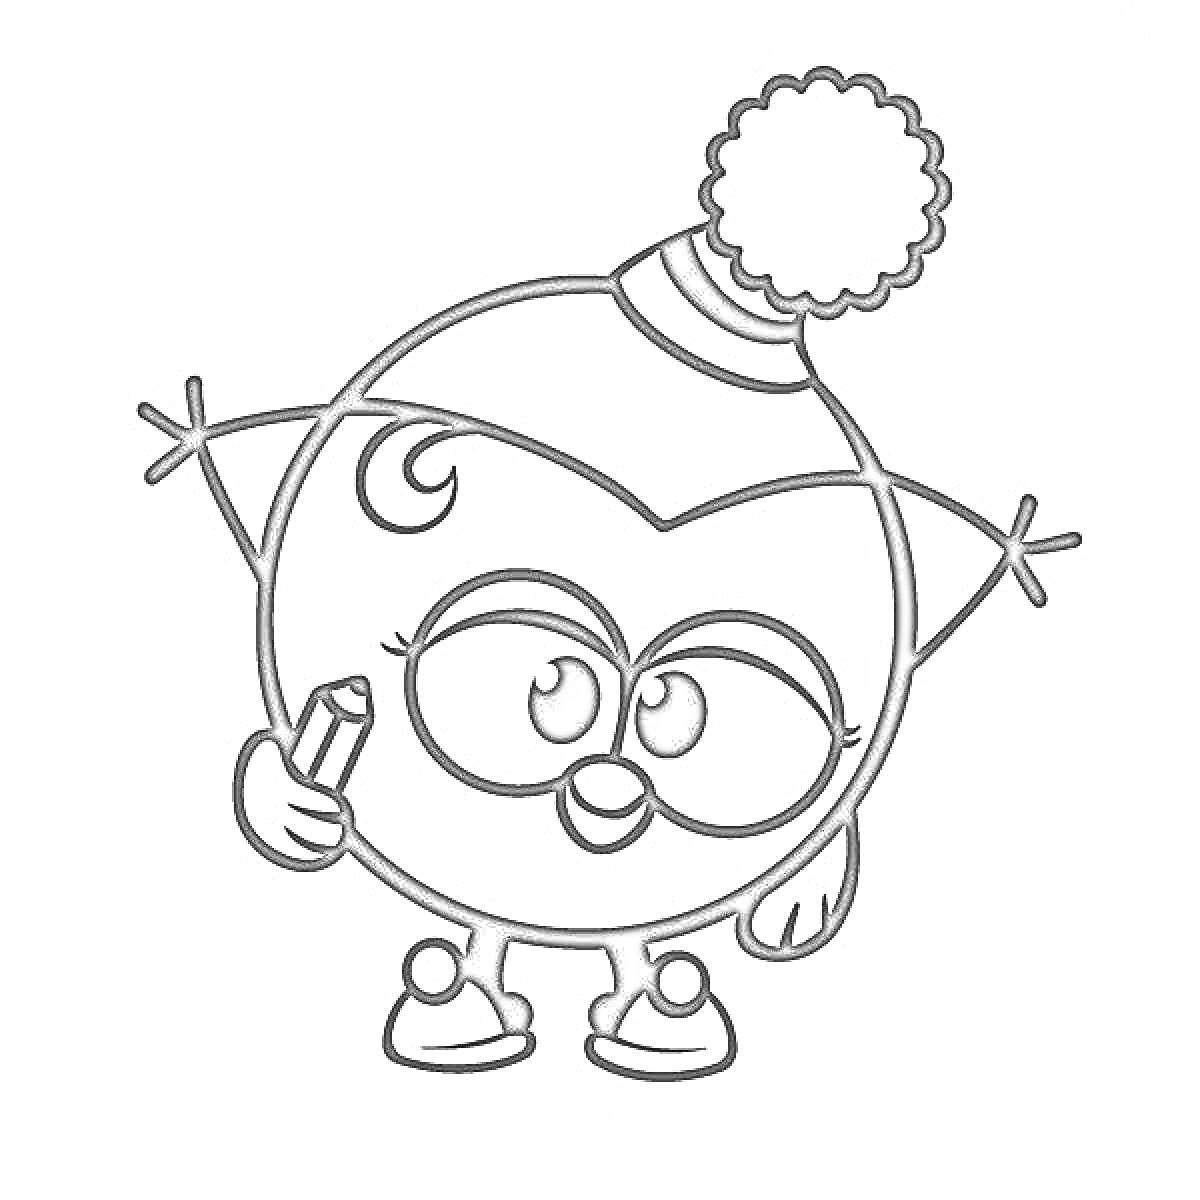 Раскраска Персонаж Малышарики с карандашом в руке, в шапочке с помпоном